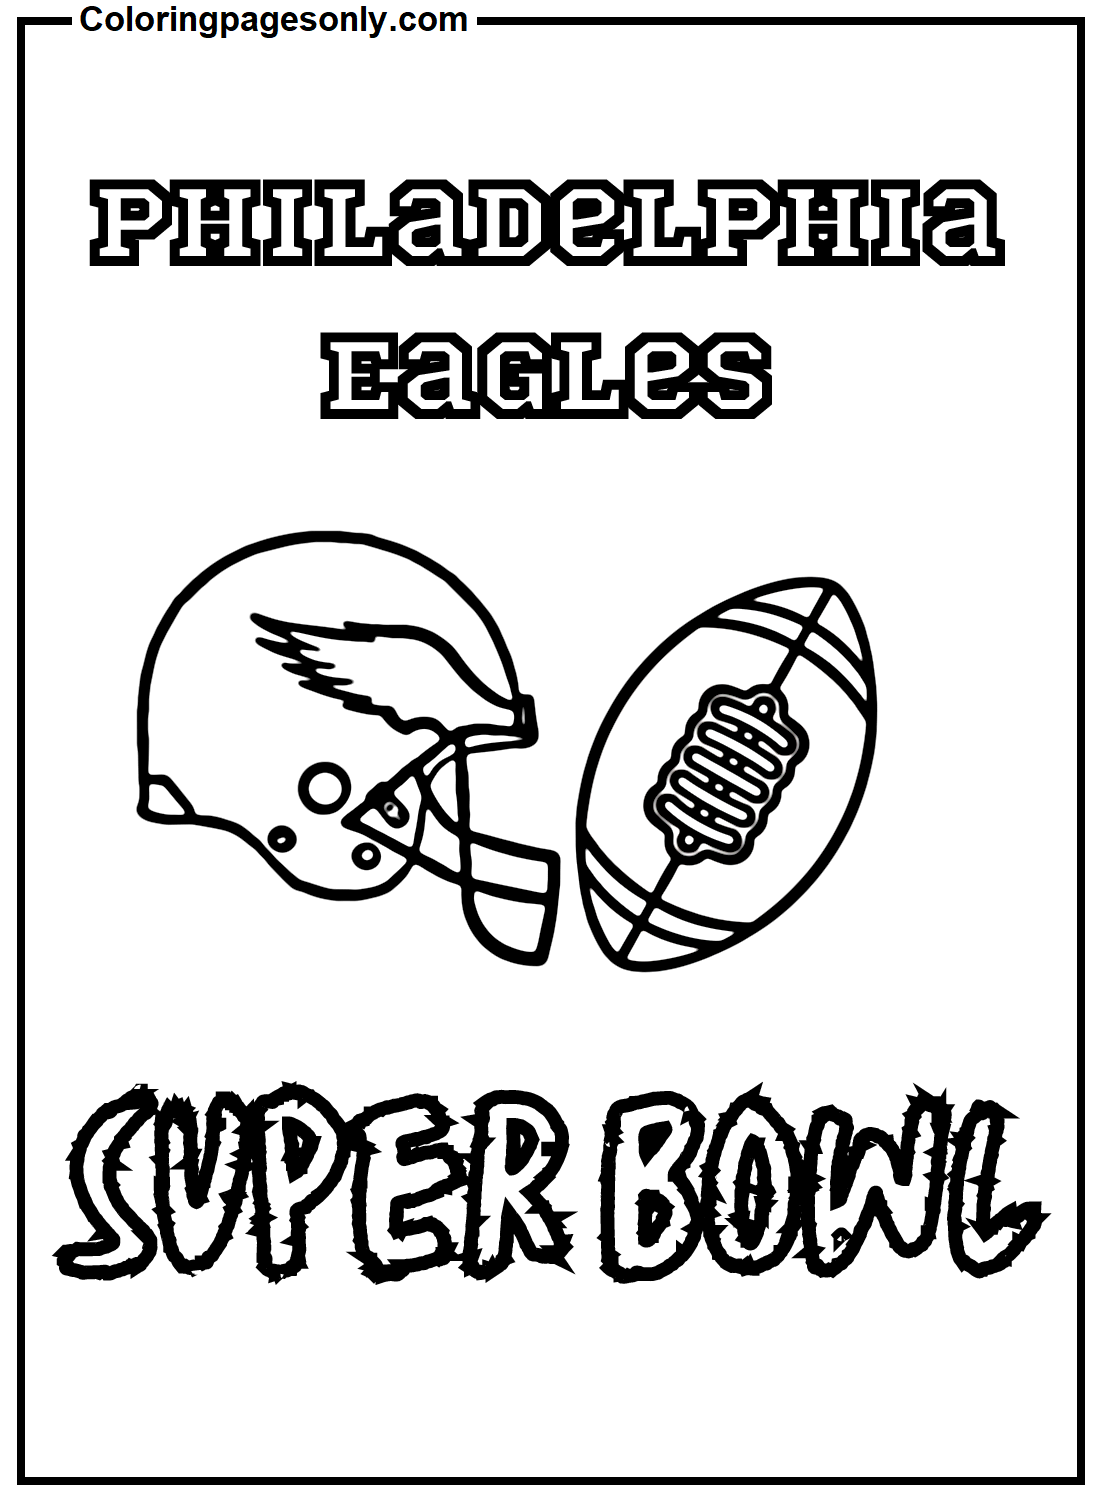 Super Bowl des Eagles de Philadelphie Image des Eagles de Philadelphie